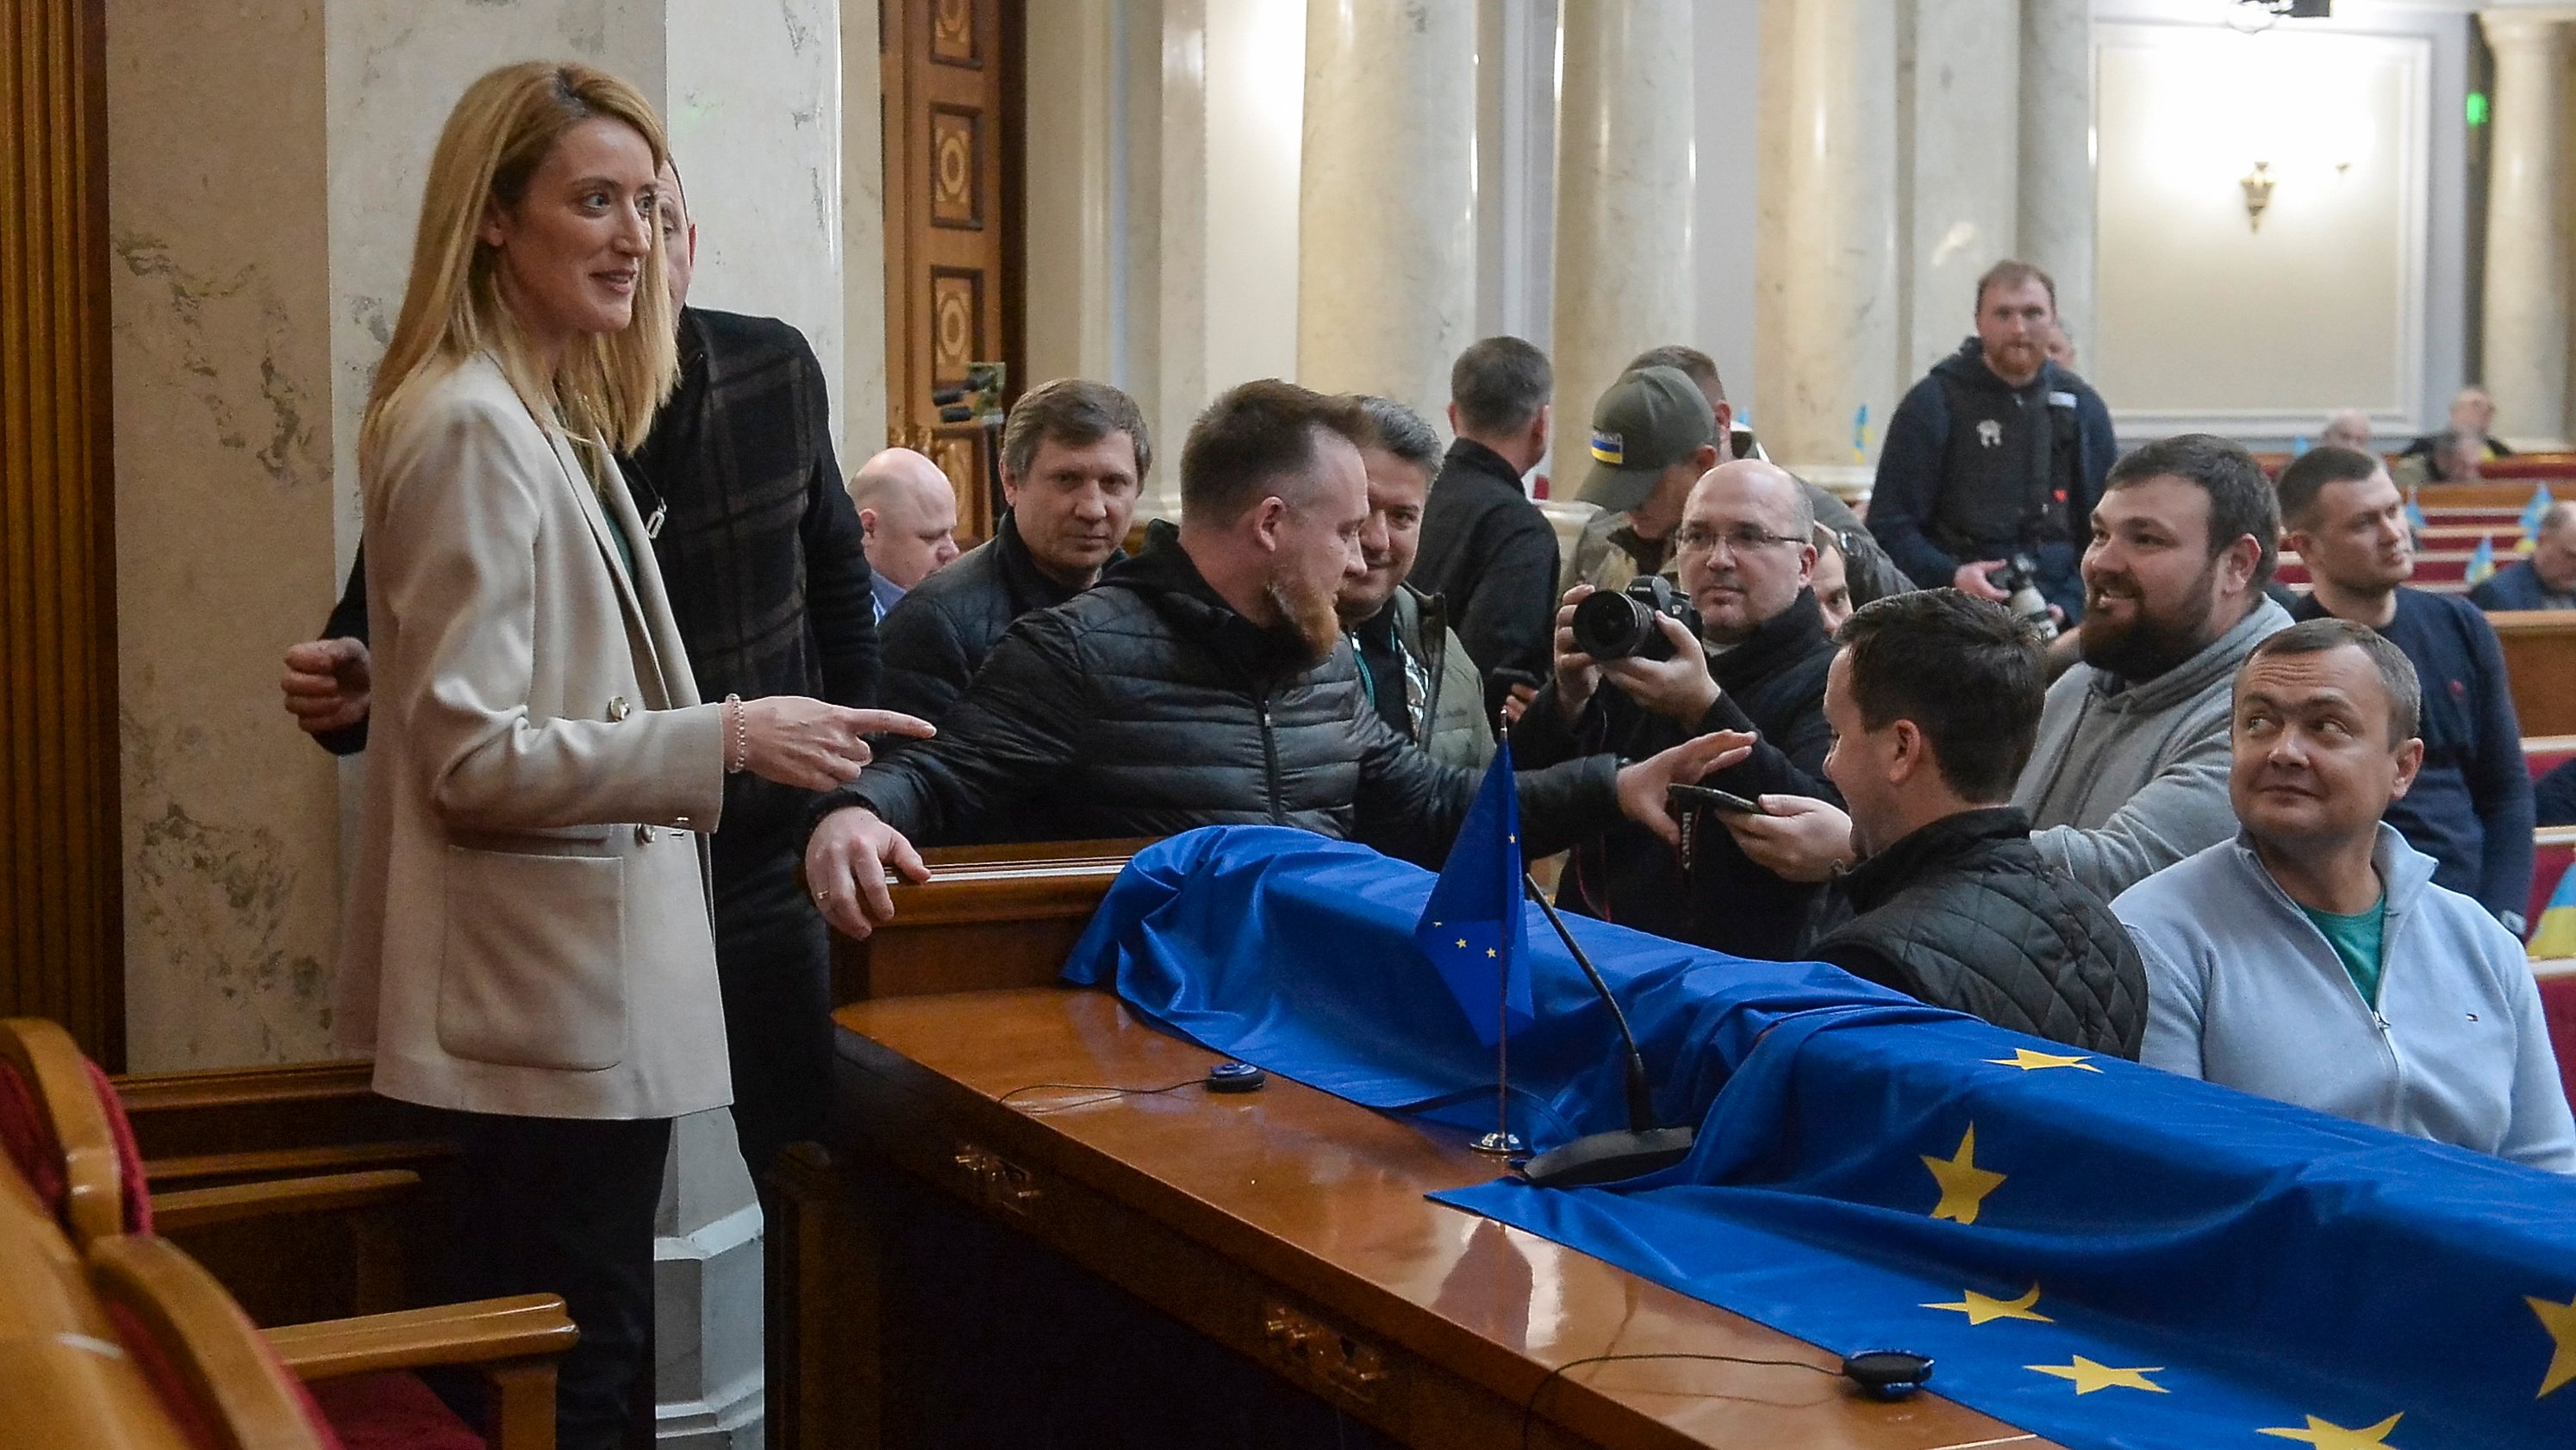 Demonstrado apoio irrestrito à Ucrânia — &quot;estamos ao vosso lado&quot; —, Roberta Metsola garantiu que a Ucrânia é bem-vinda na União Europeia